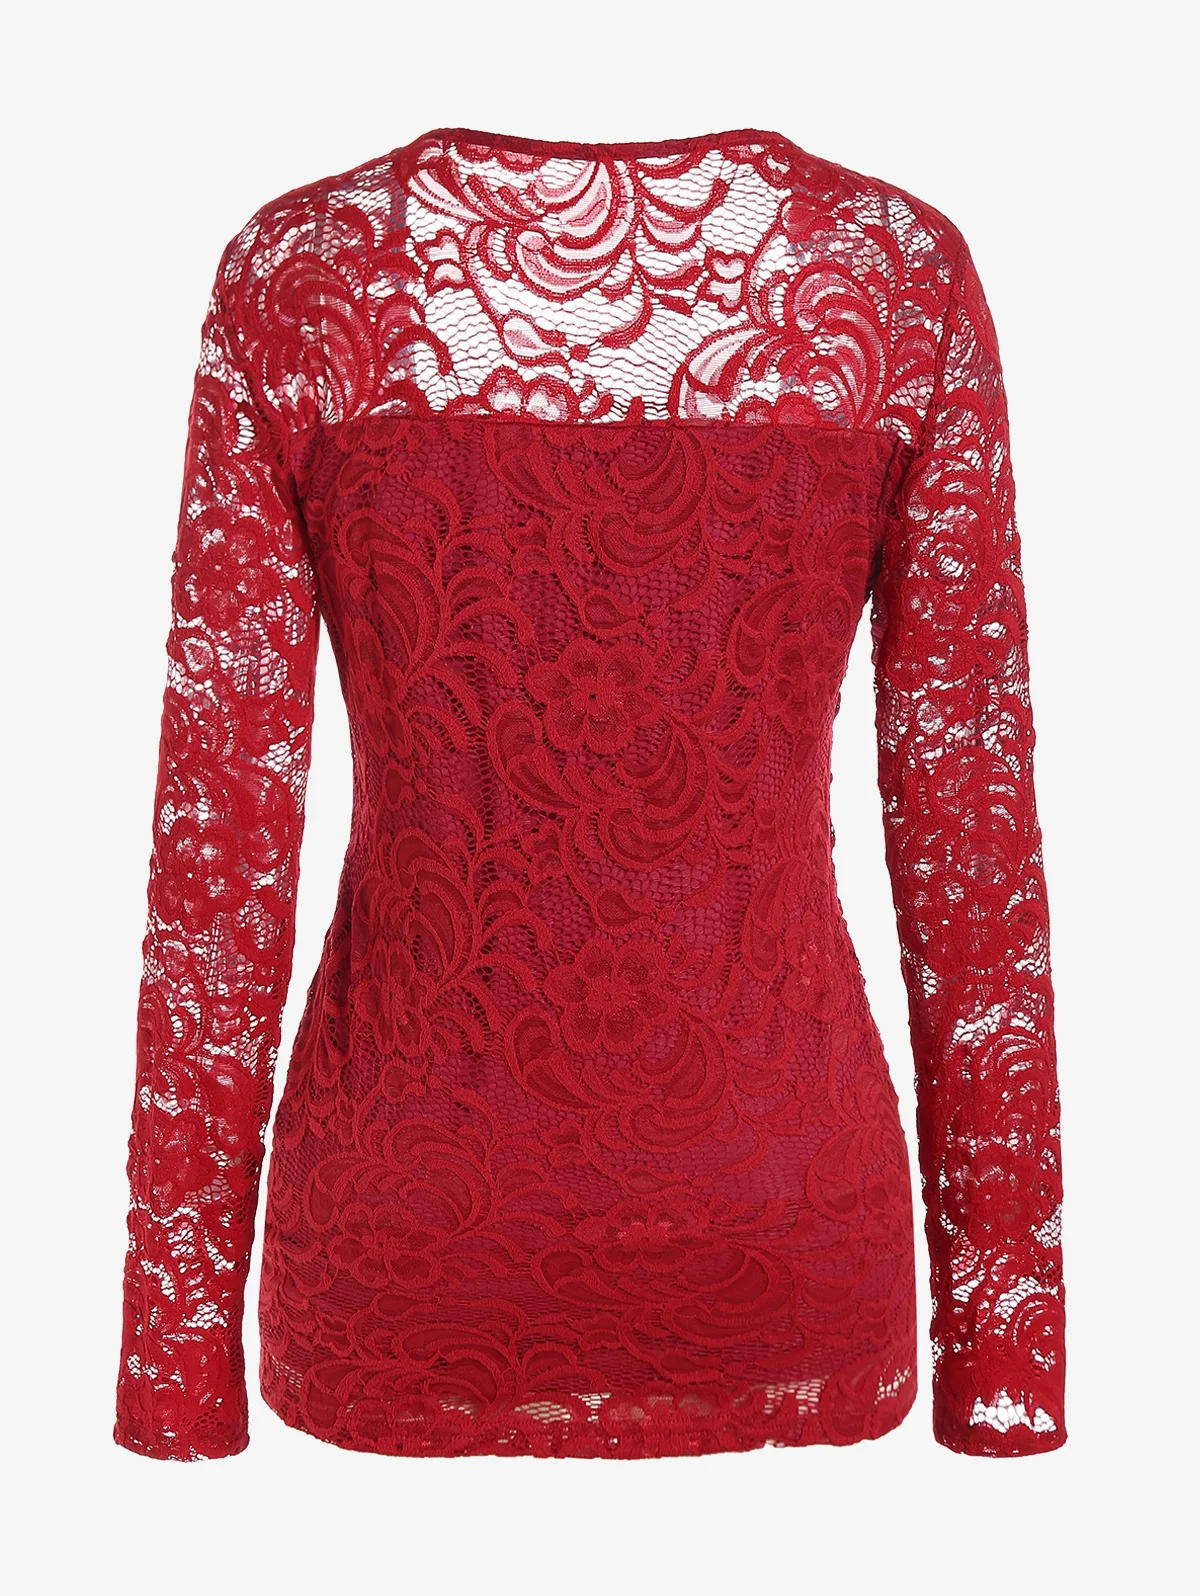 ROSEGAL Derin Kırmızı Dantel Paneli Tees Gömlek Sevgiliye Boyun Sahte Twinset Katmanlı Bluzlar Yeni Vintage kadın Seksi Twofer Üst M-4XL